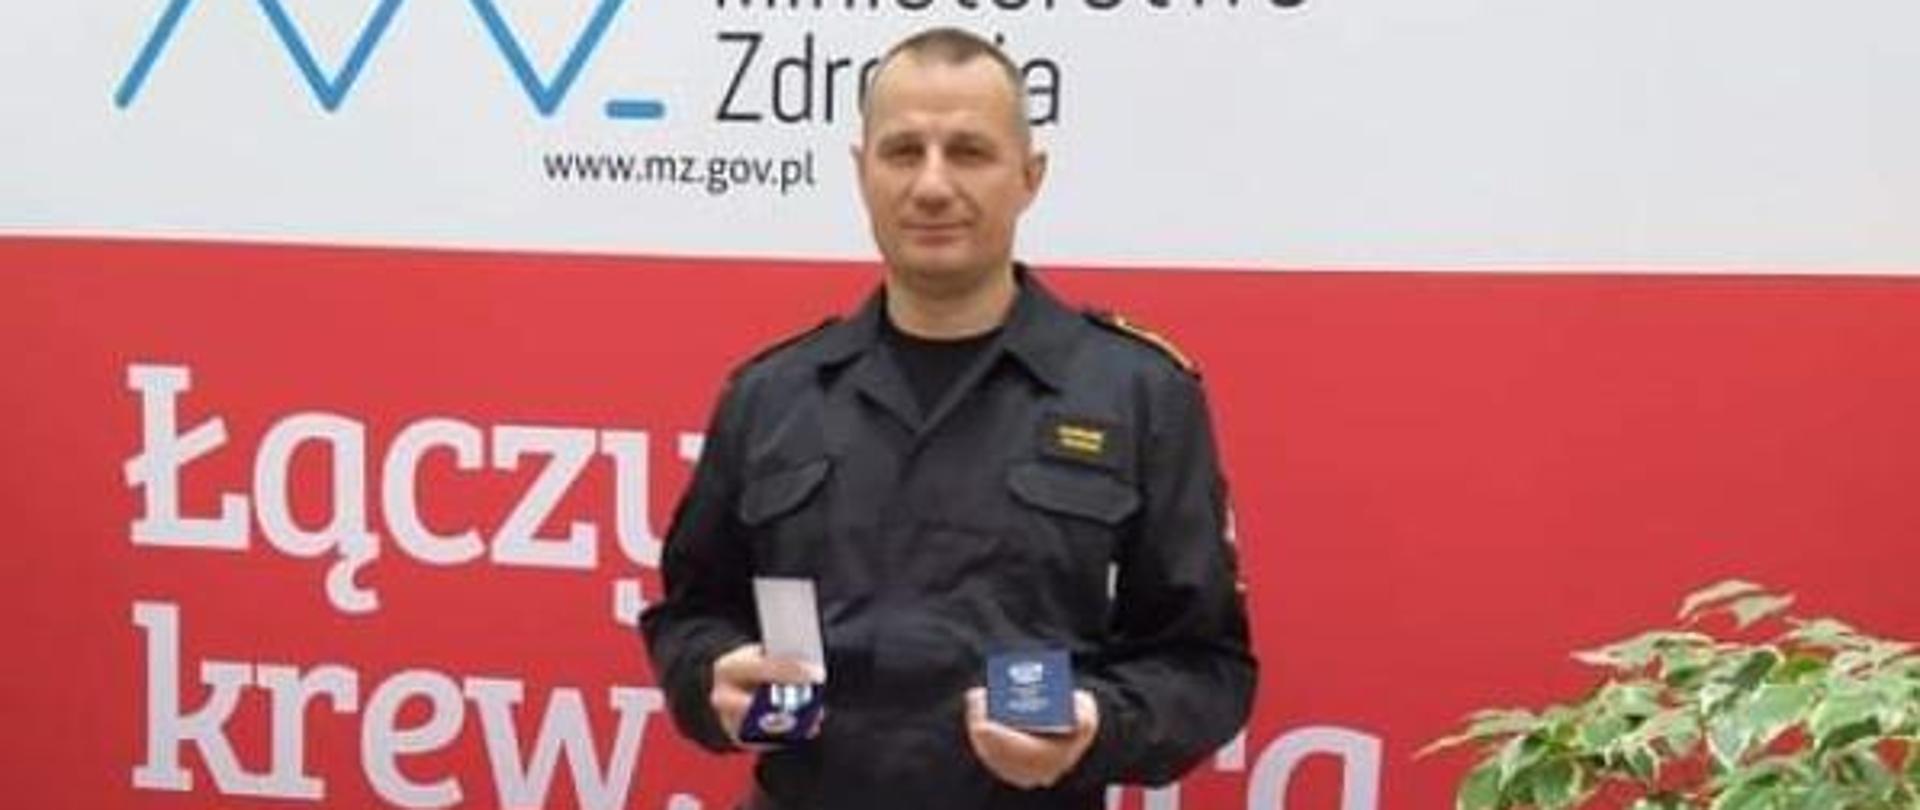 asp. sztab. Dariusz Pacion otrzymał Odznaką „Honorowy Dawca Krwi – Zasłużony dla Zdrowia Narodu” .